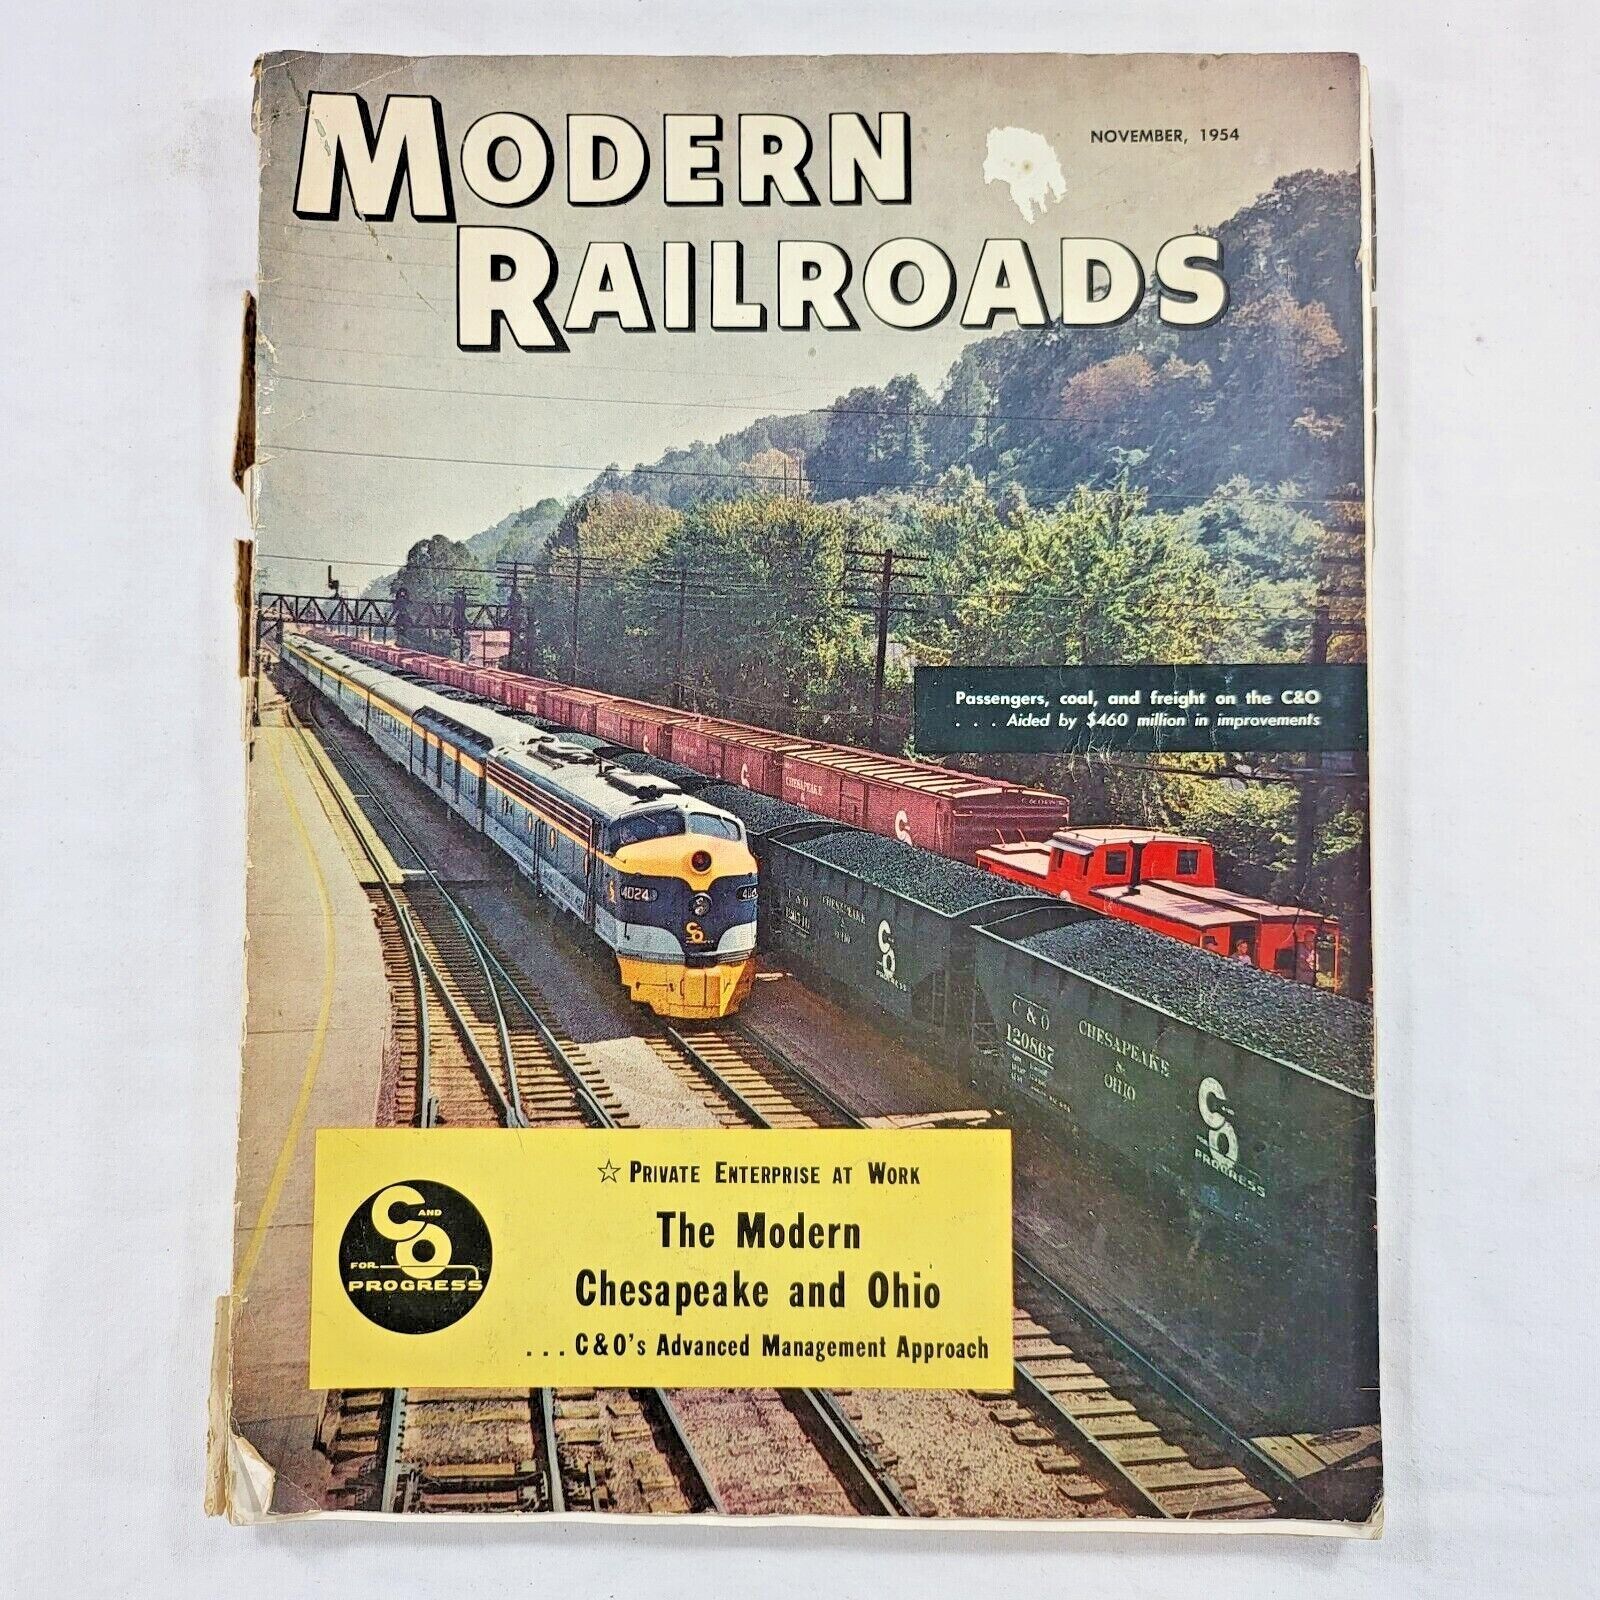 1954 MODERN RAILROAD Magazine - November Issue